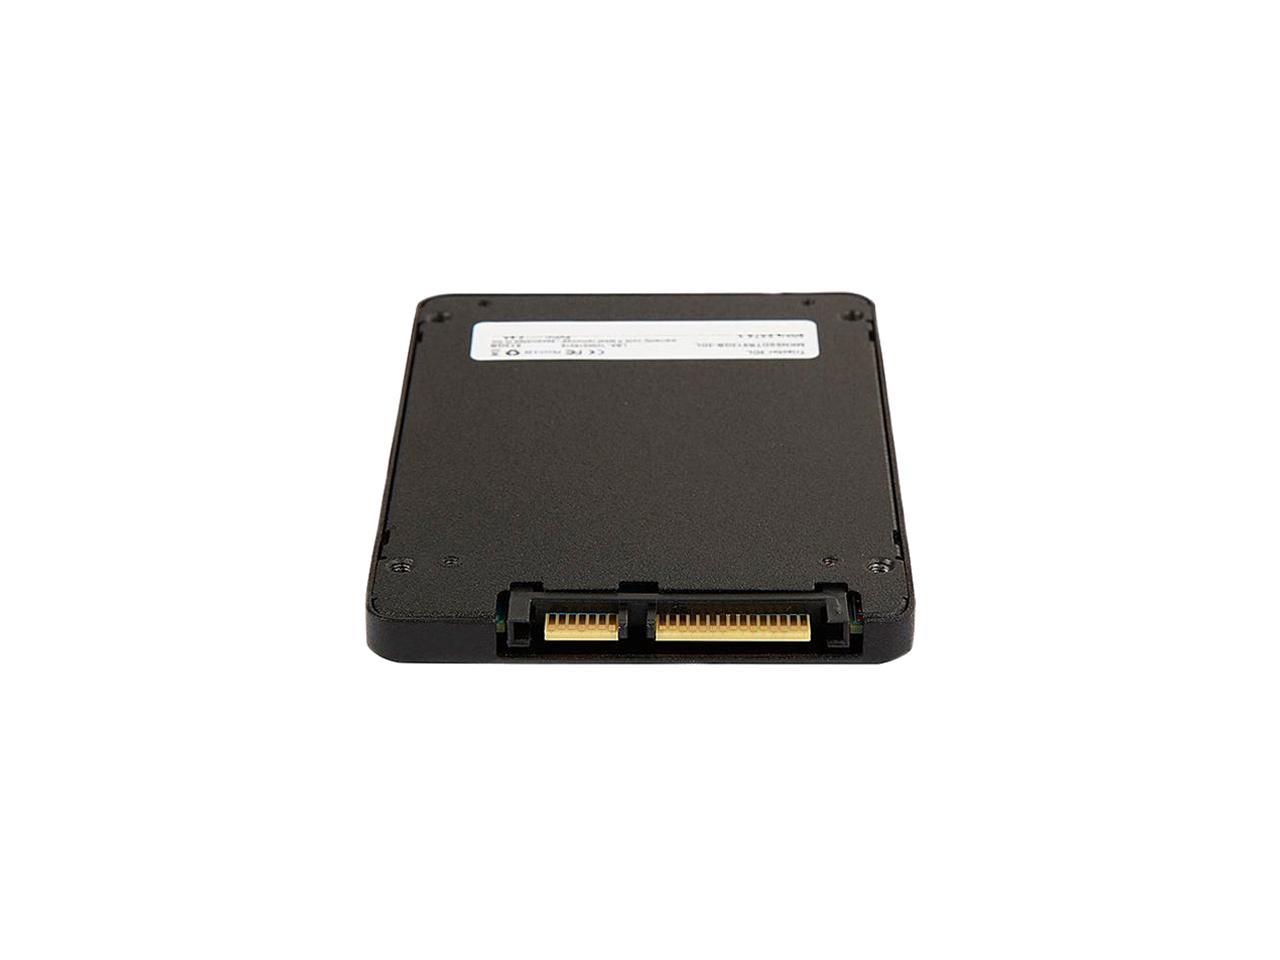 Mushkin RAW Series 2.5" 2TB SATA III 3D TLC Internal Solid State Drive (SSD) MKNSSDRW2TB